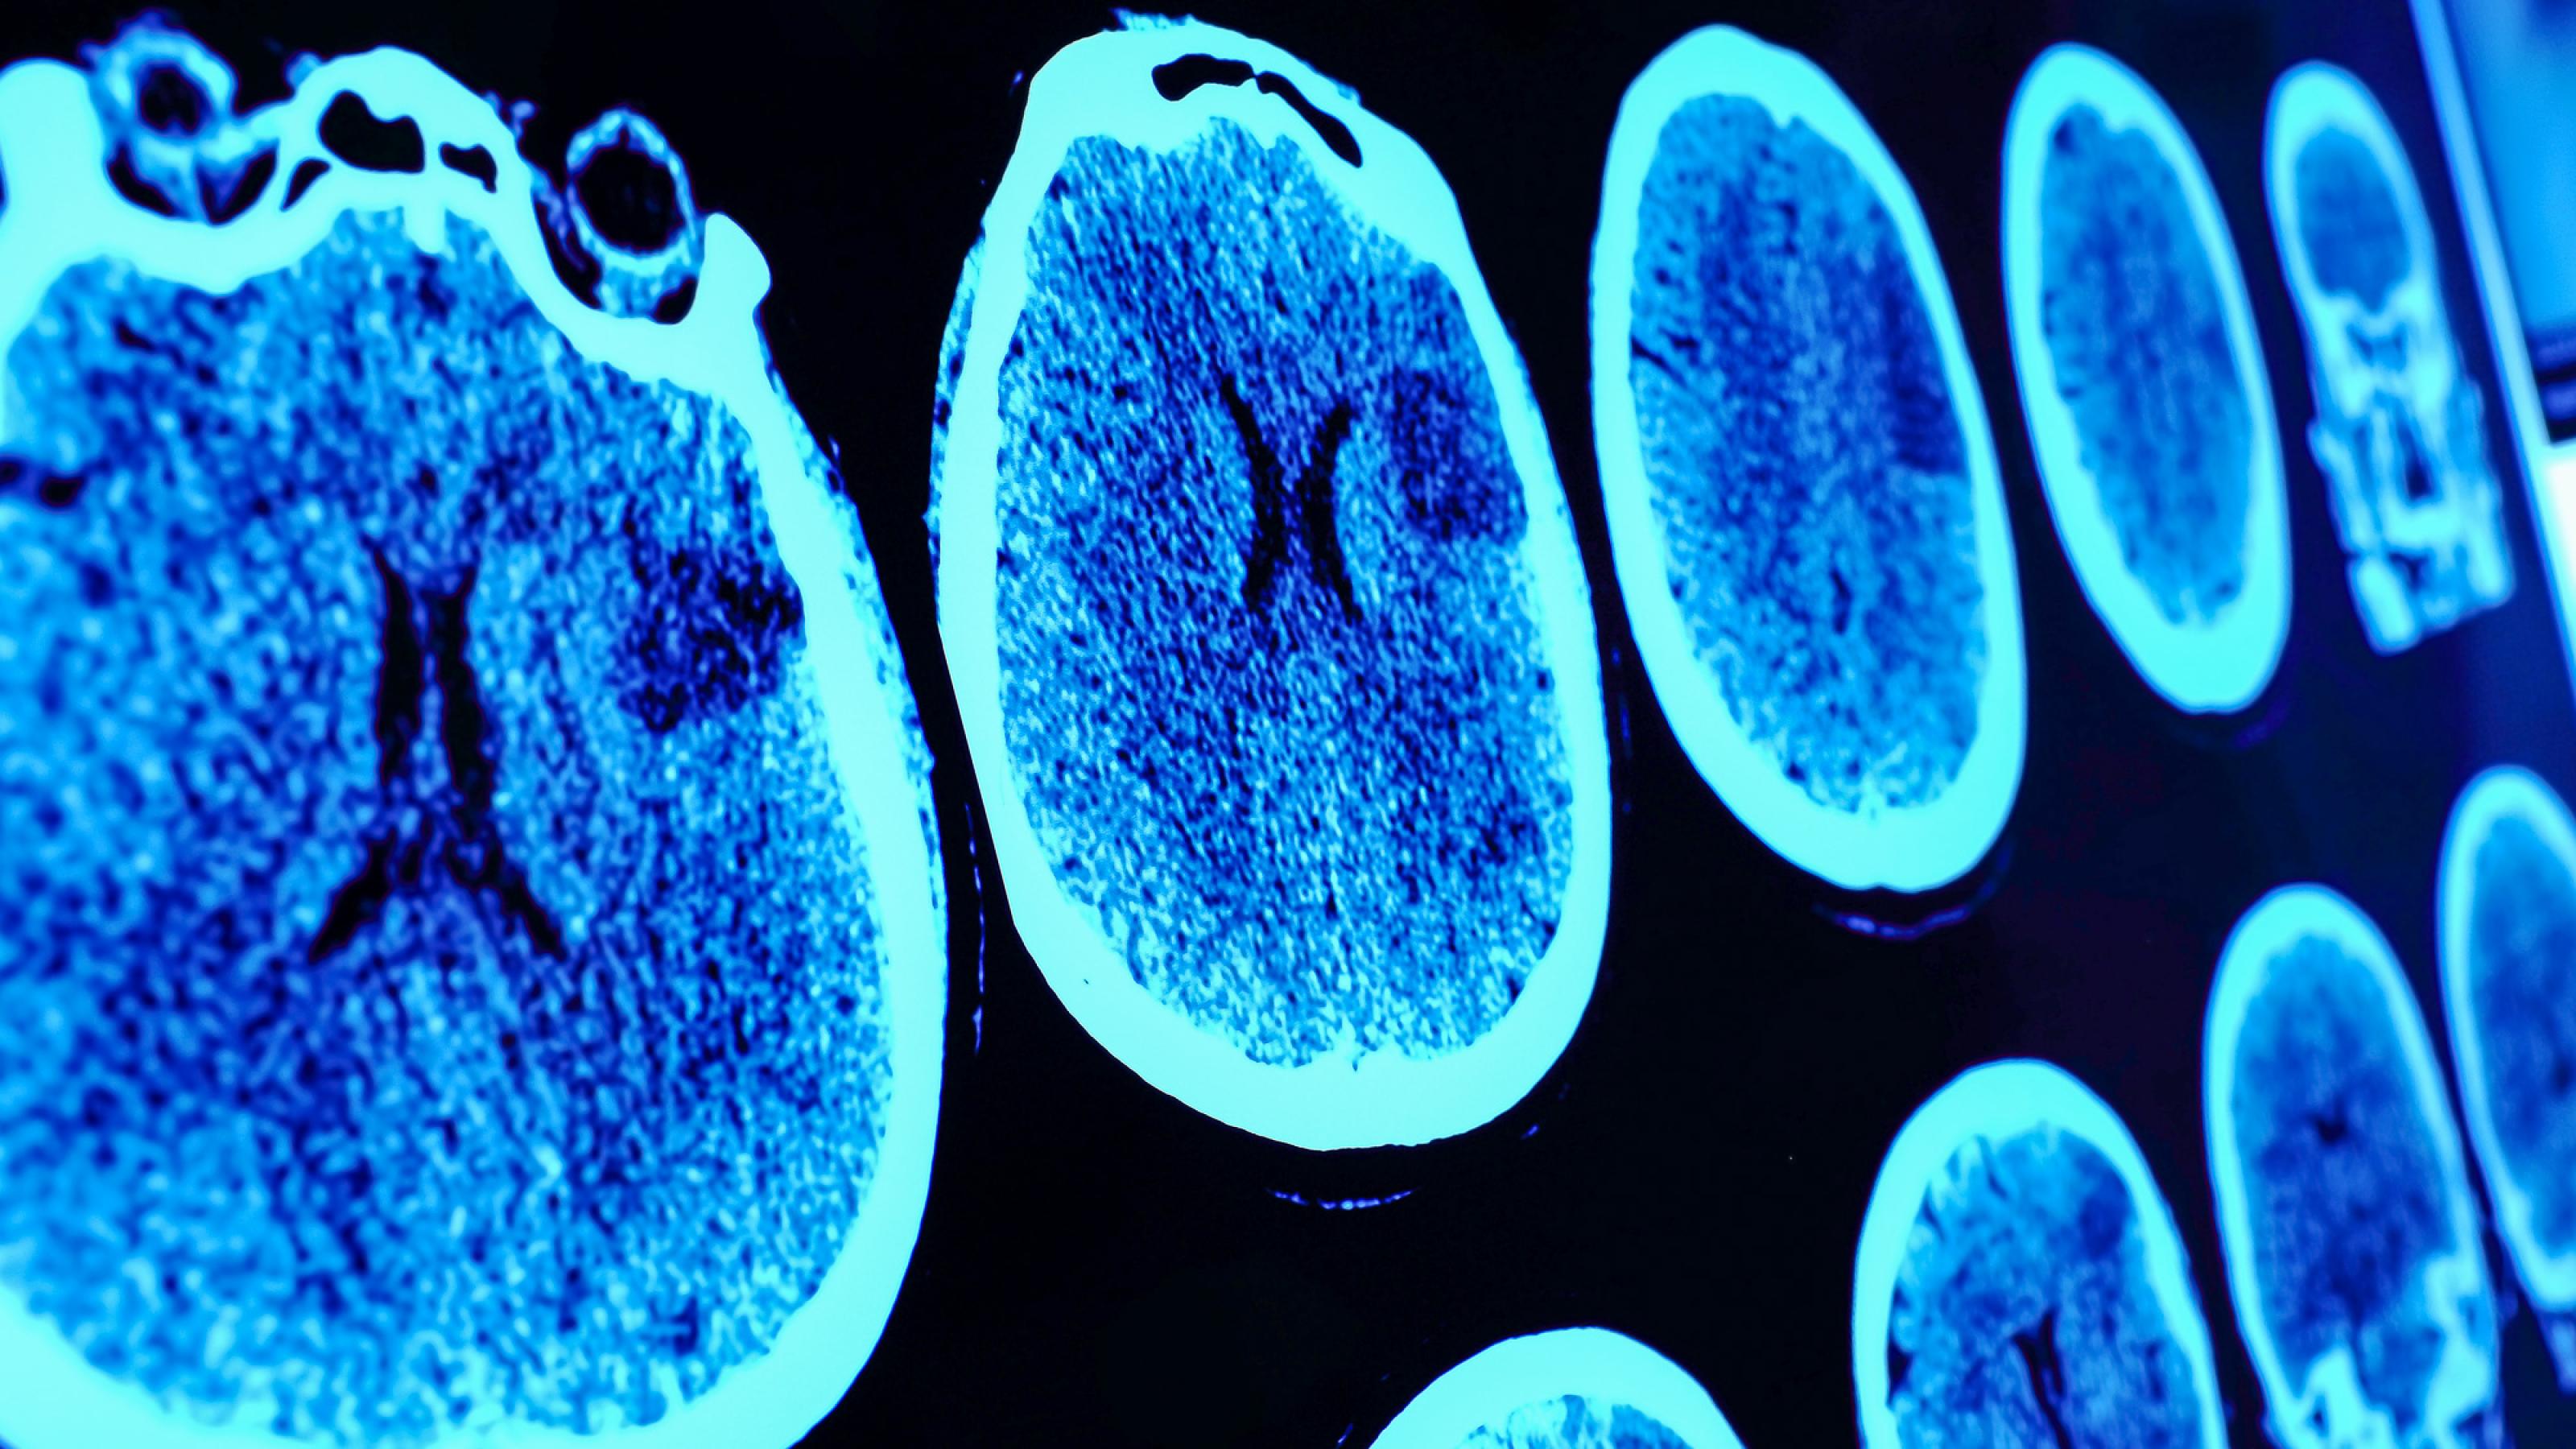 Röntgenaufnahmen eines menschlichen Gehirns hängen an einem Leutapparat.